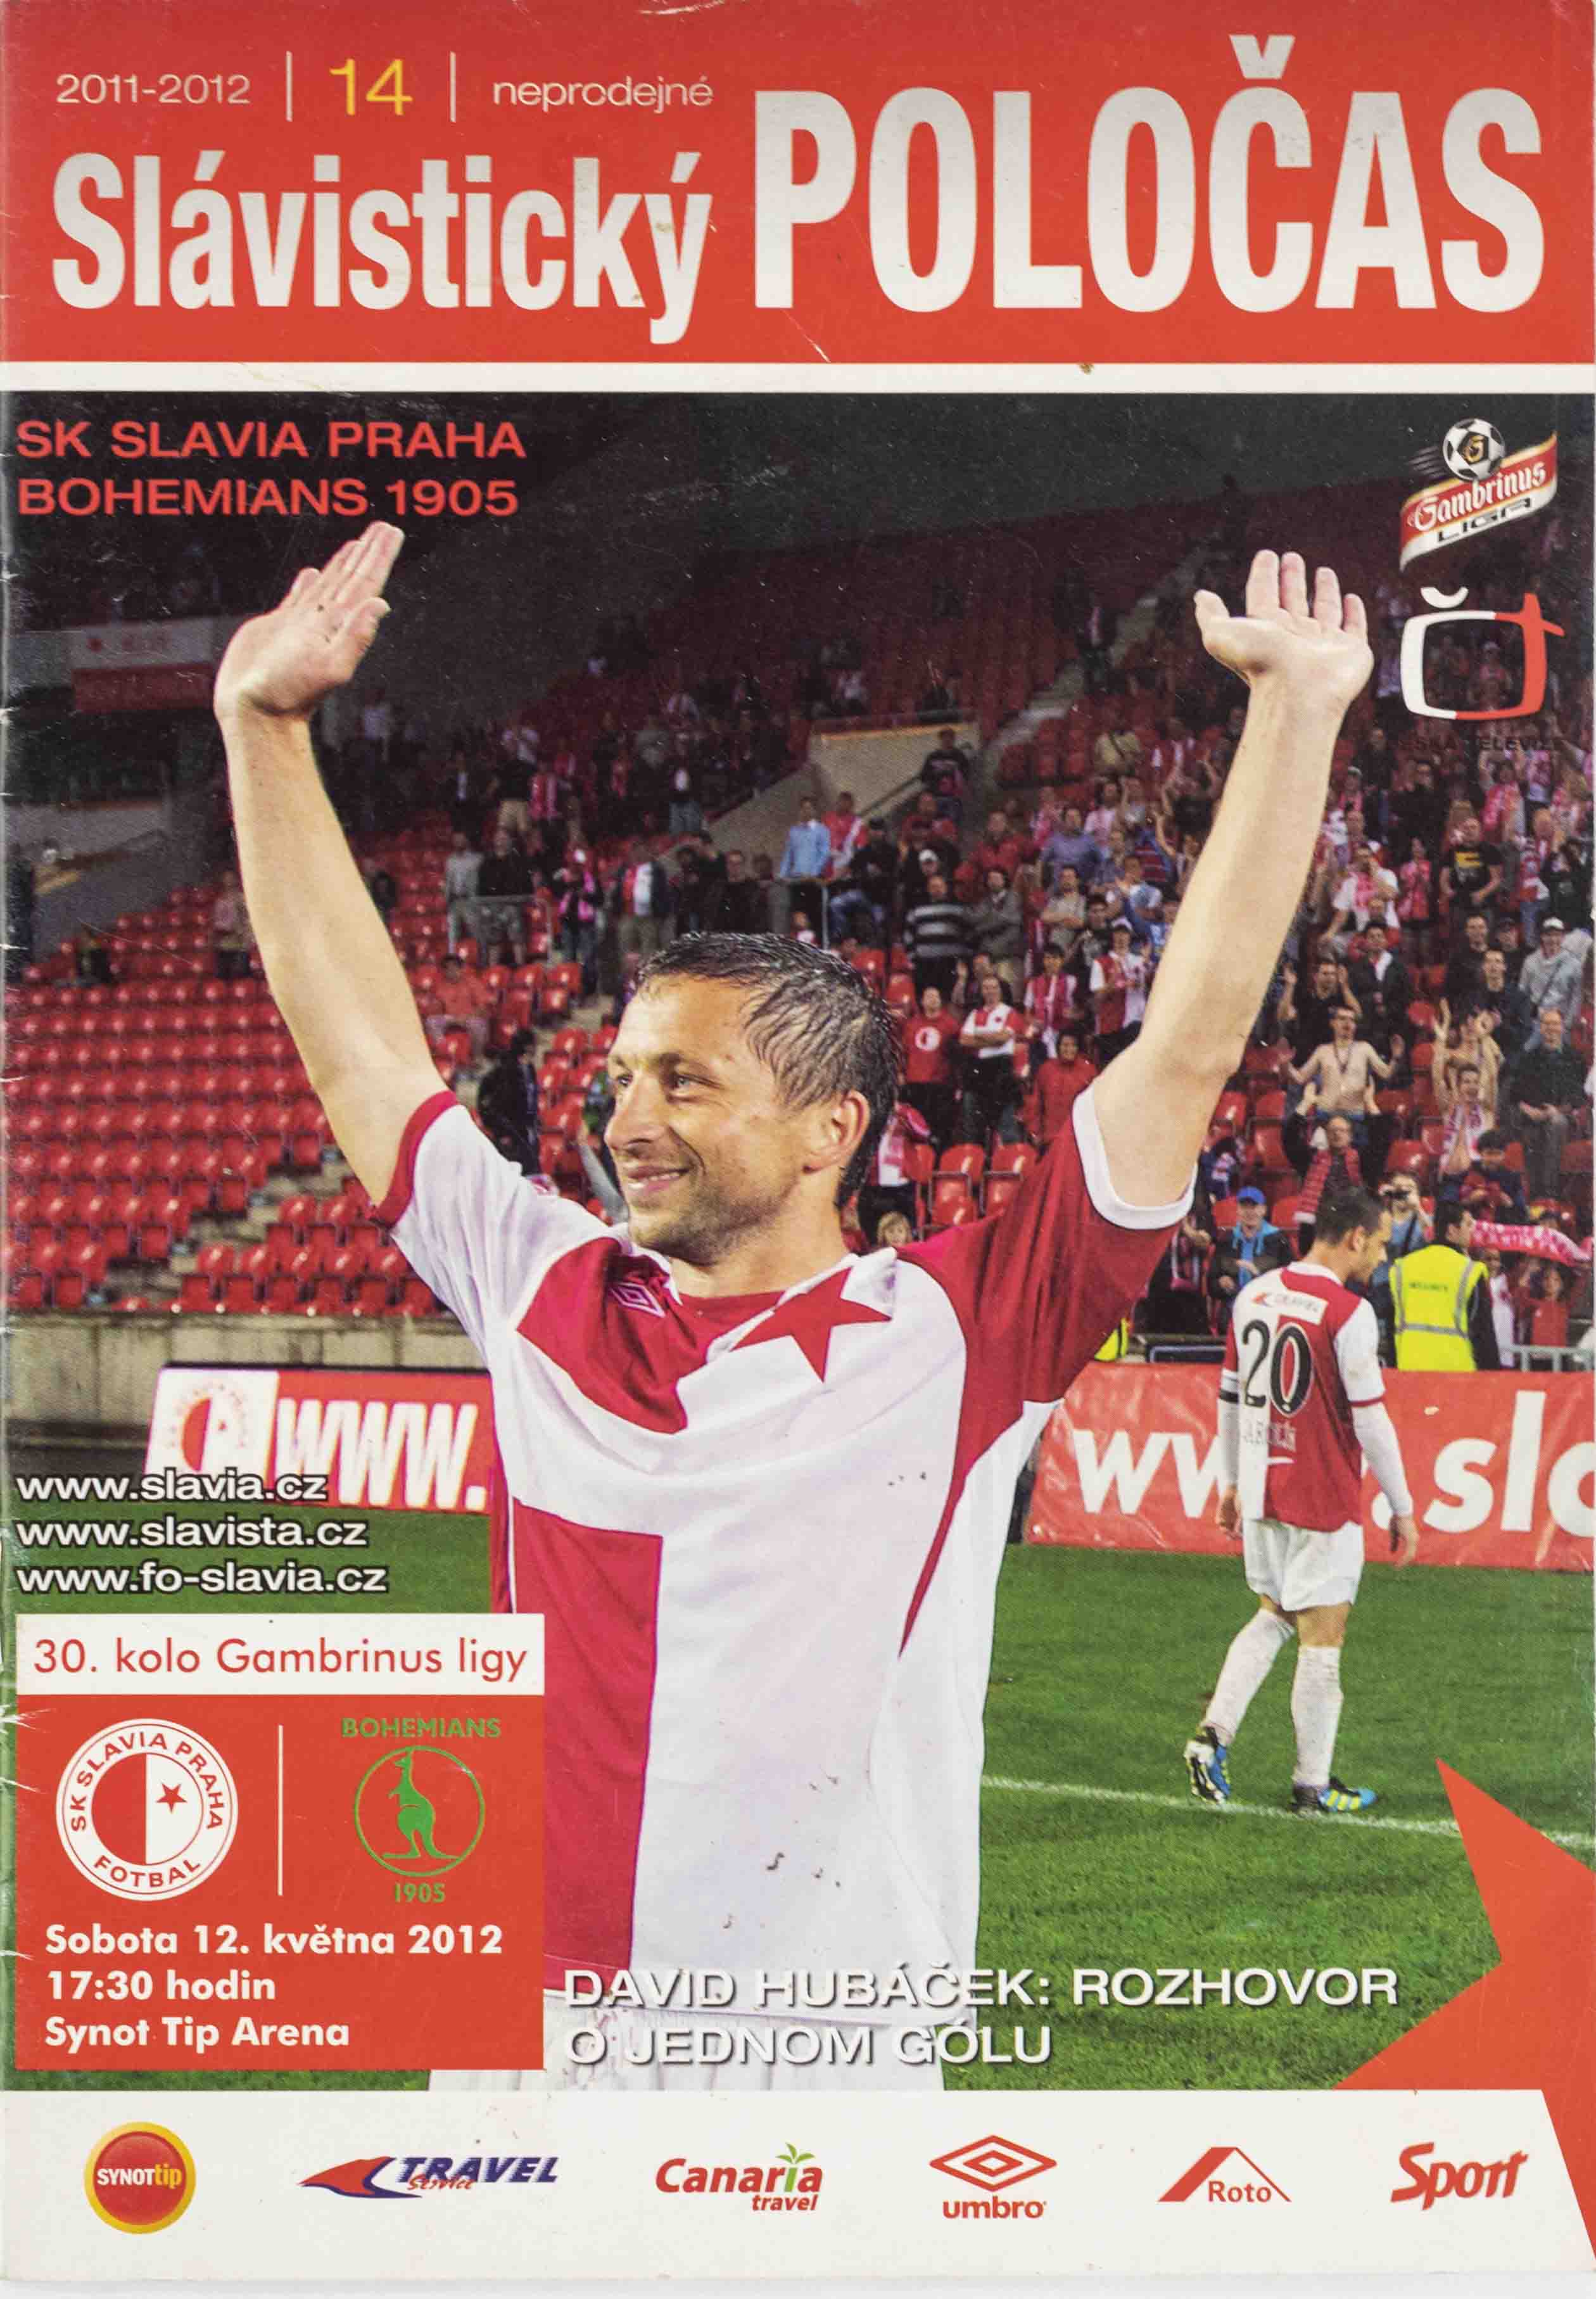 Slávistický Poločas Slavia Praha vs. Bohemians 1905, 2011-12